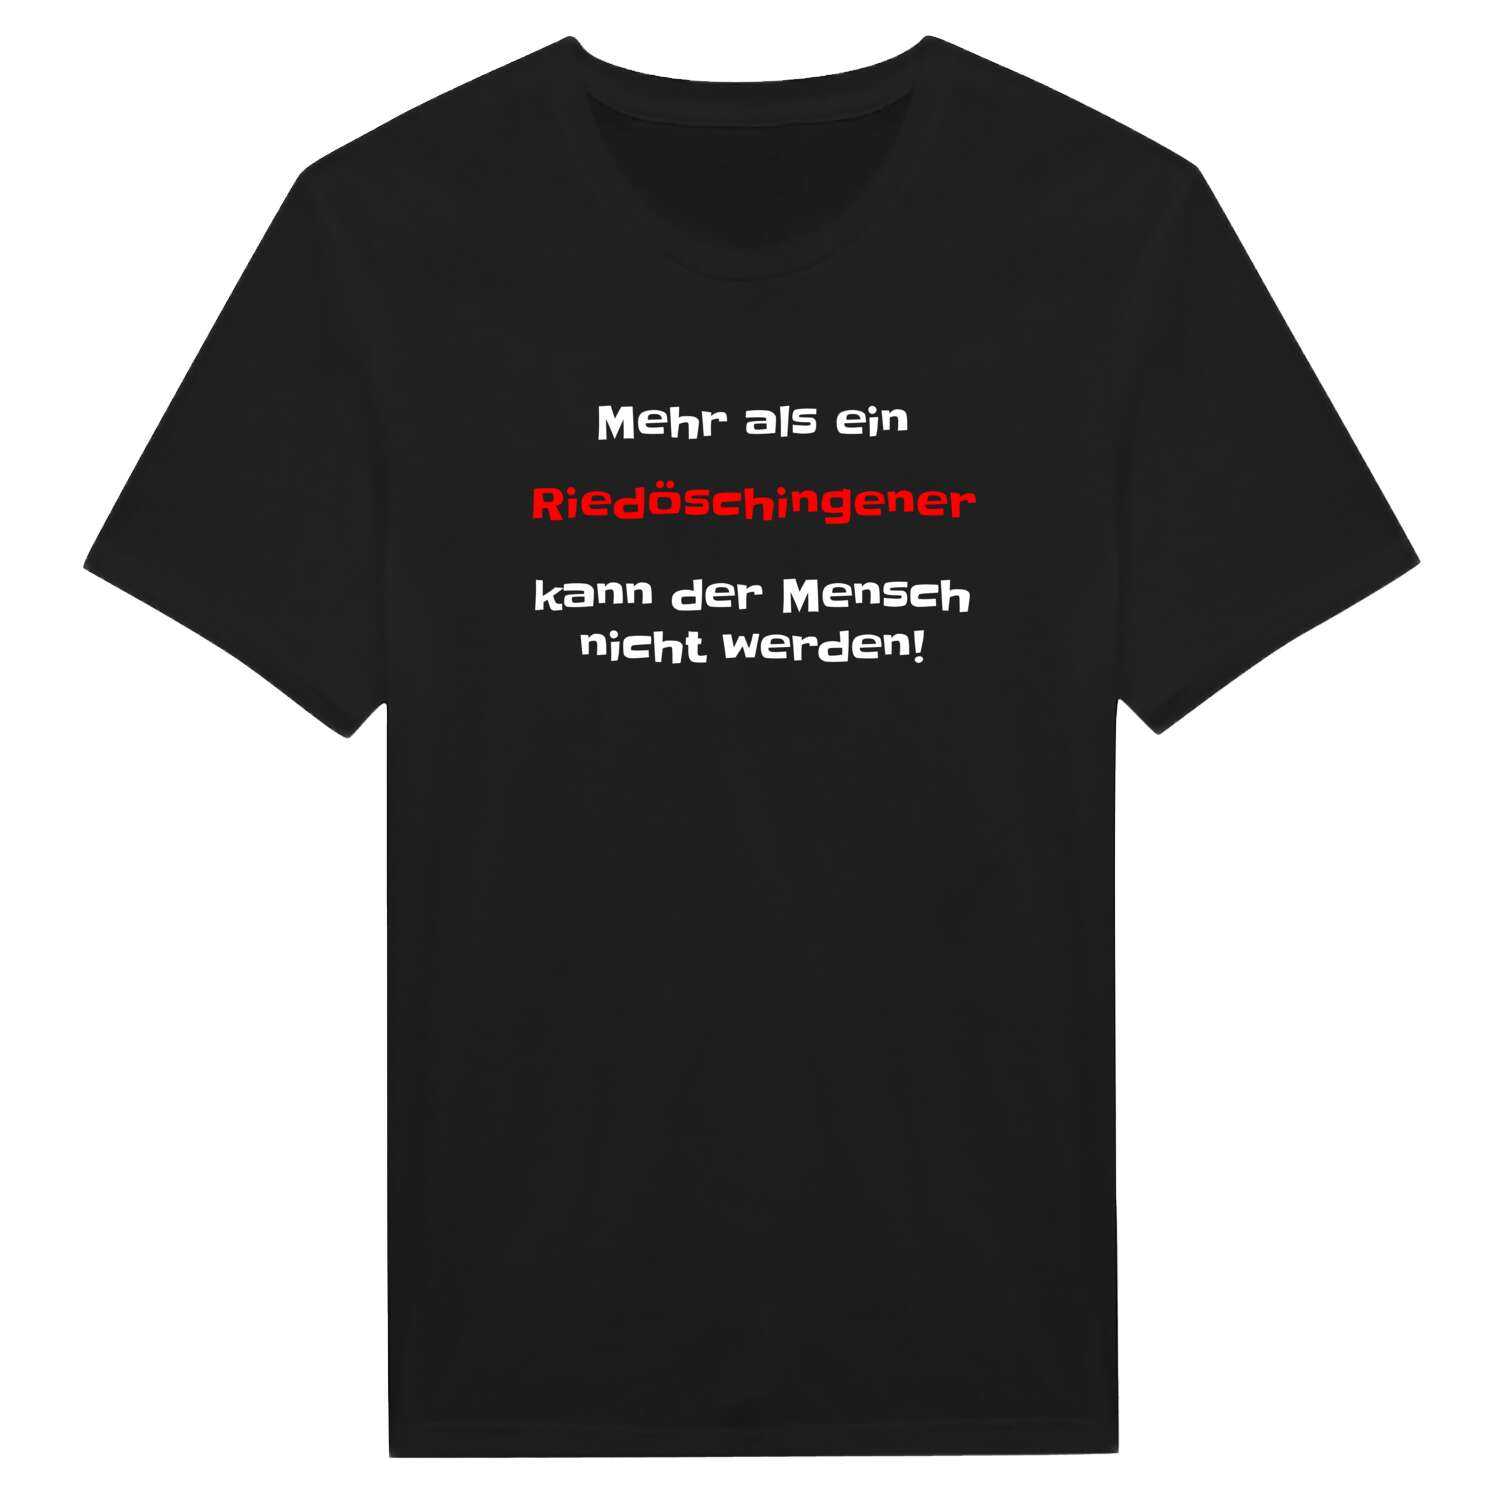 Riedöschingen T-Shirt »Mehr als ein«